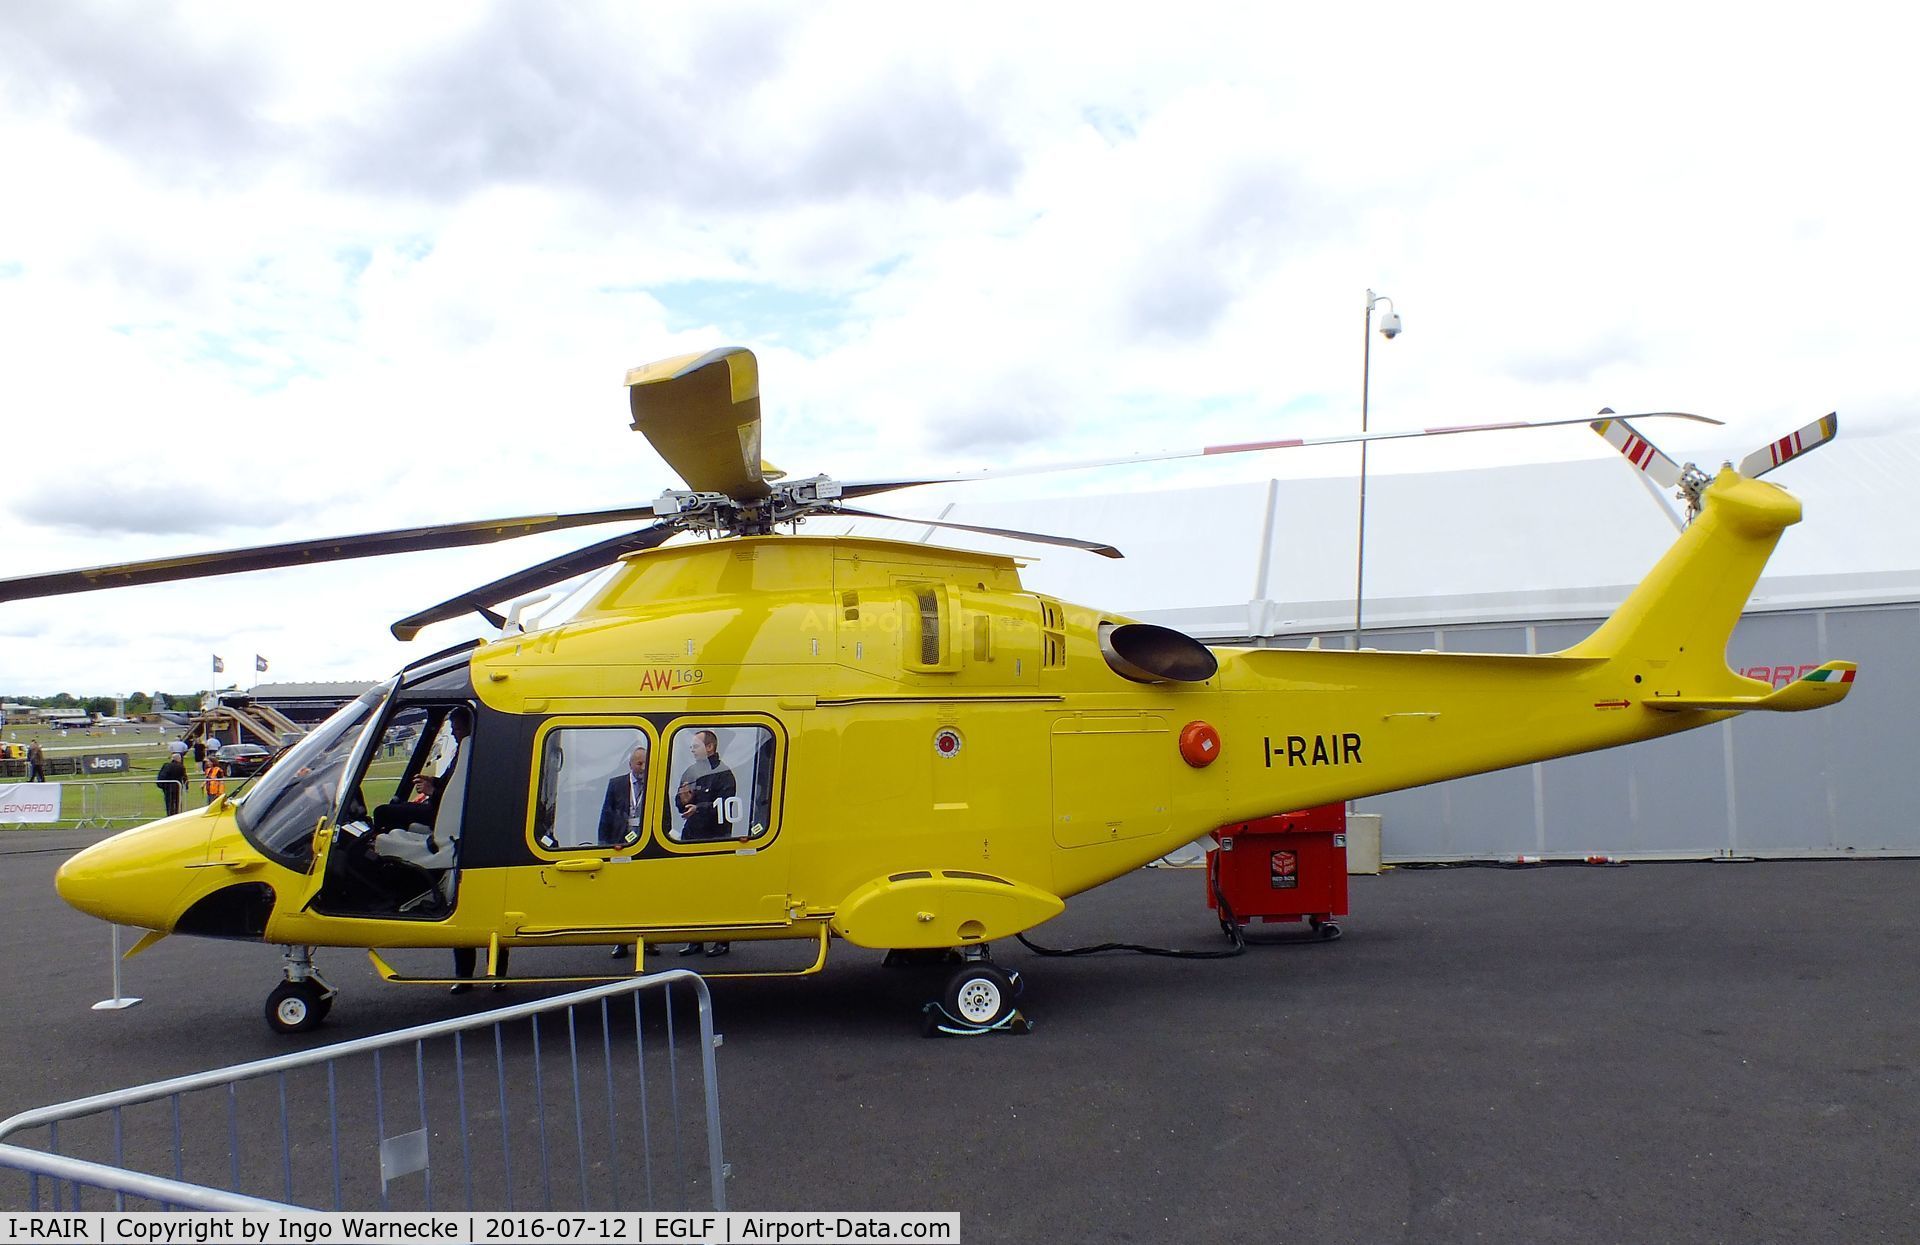 I-RAIR, 2015 AgustaWestland AW169 C/N 69010, AgustaWestland AW169 at Farnborough International 2016